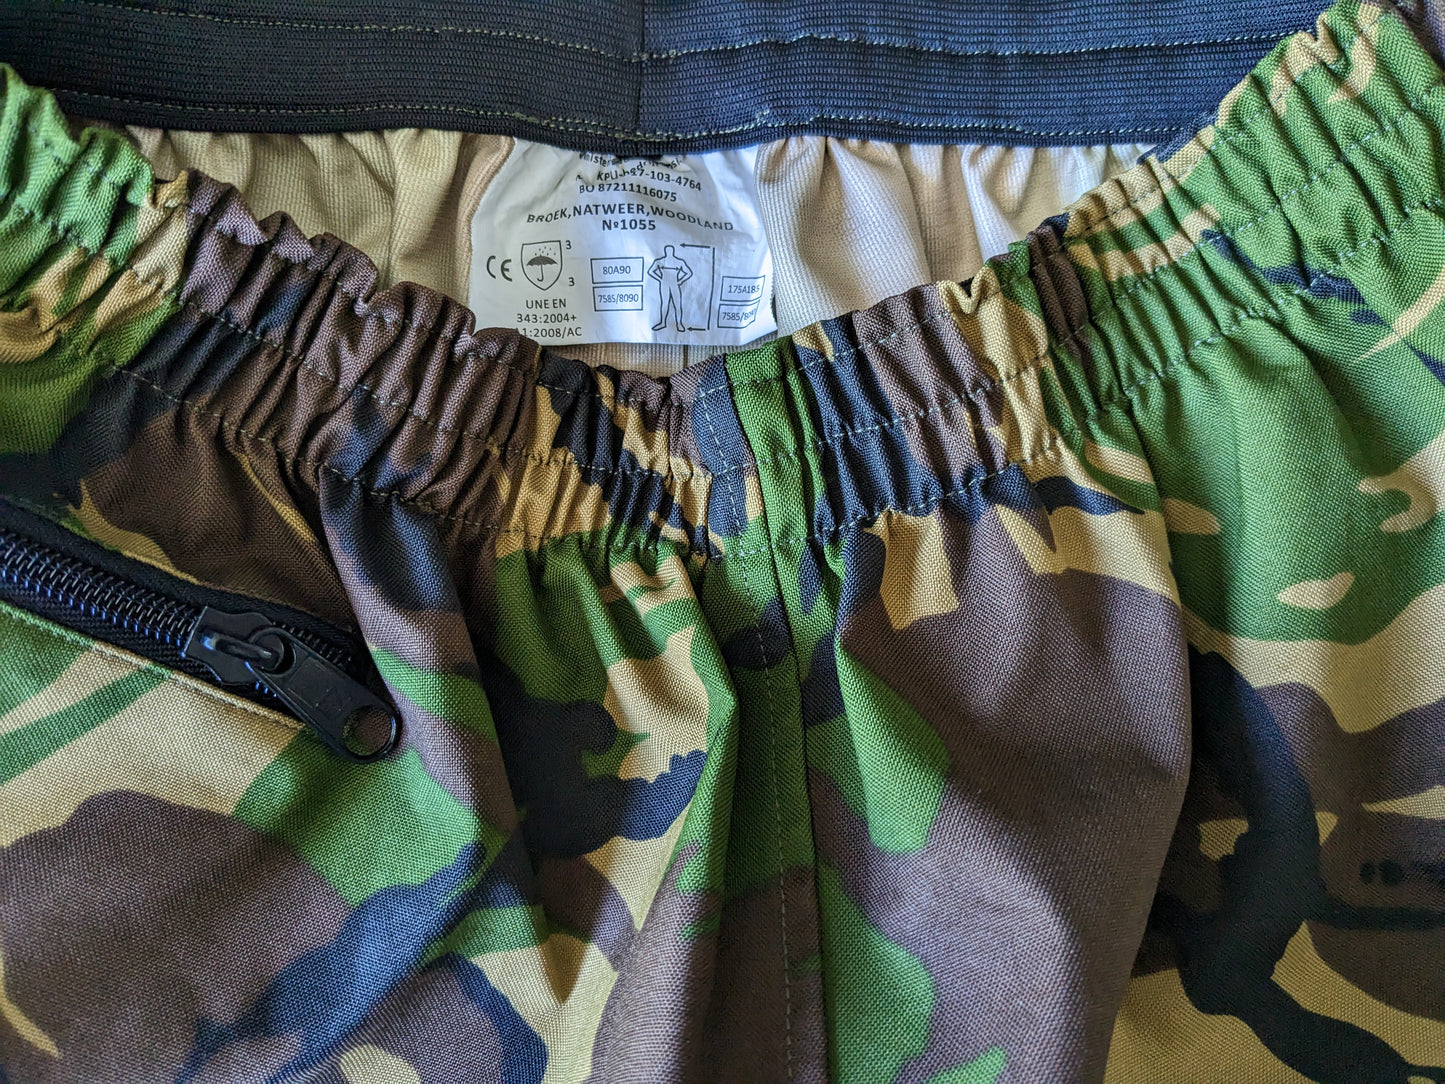 Pantalones del ejército / ejército. Hidrófugo. Impresión de camuflaje negro marrón verde. Talla M.